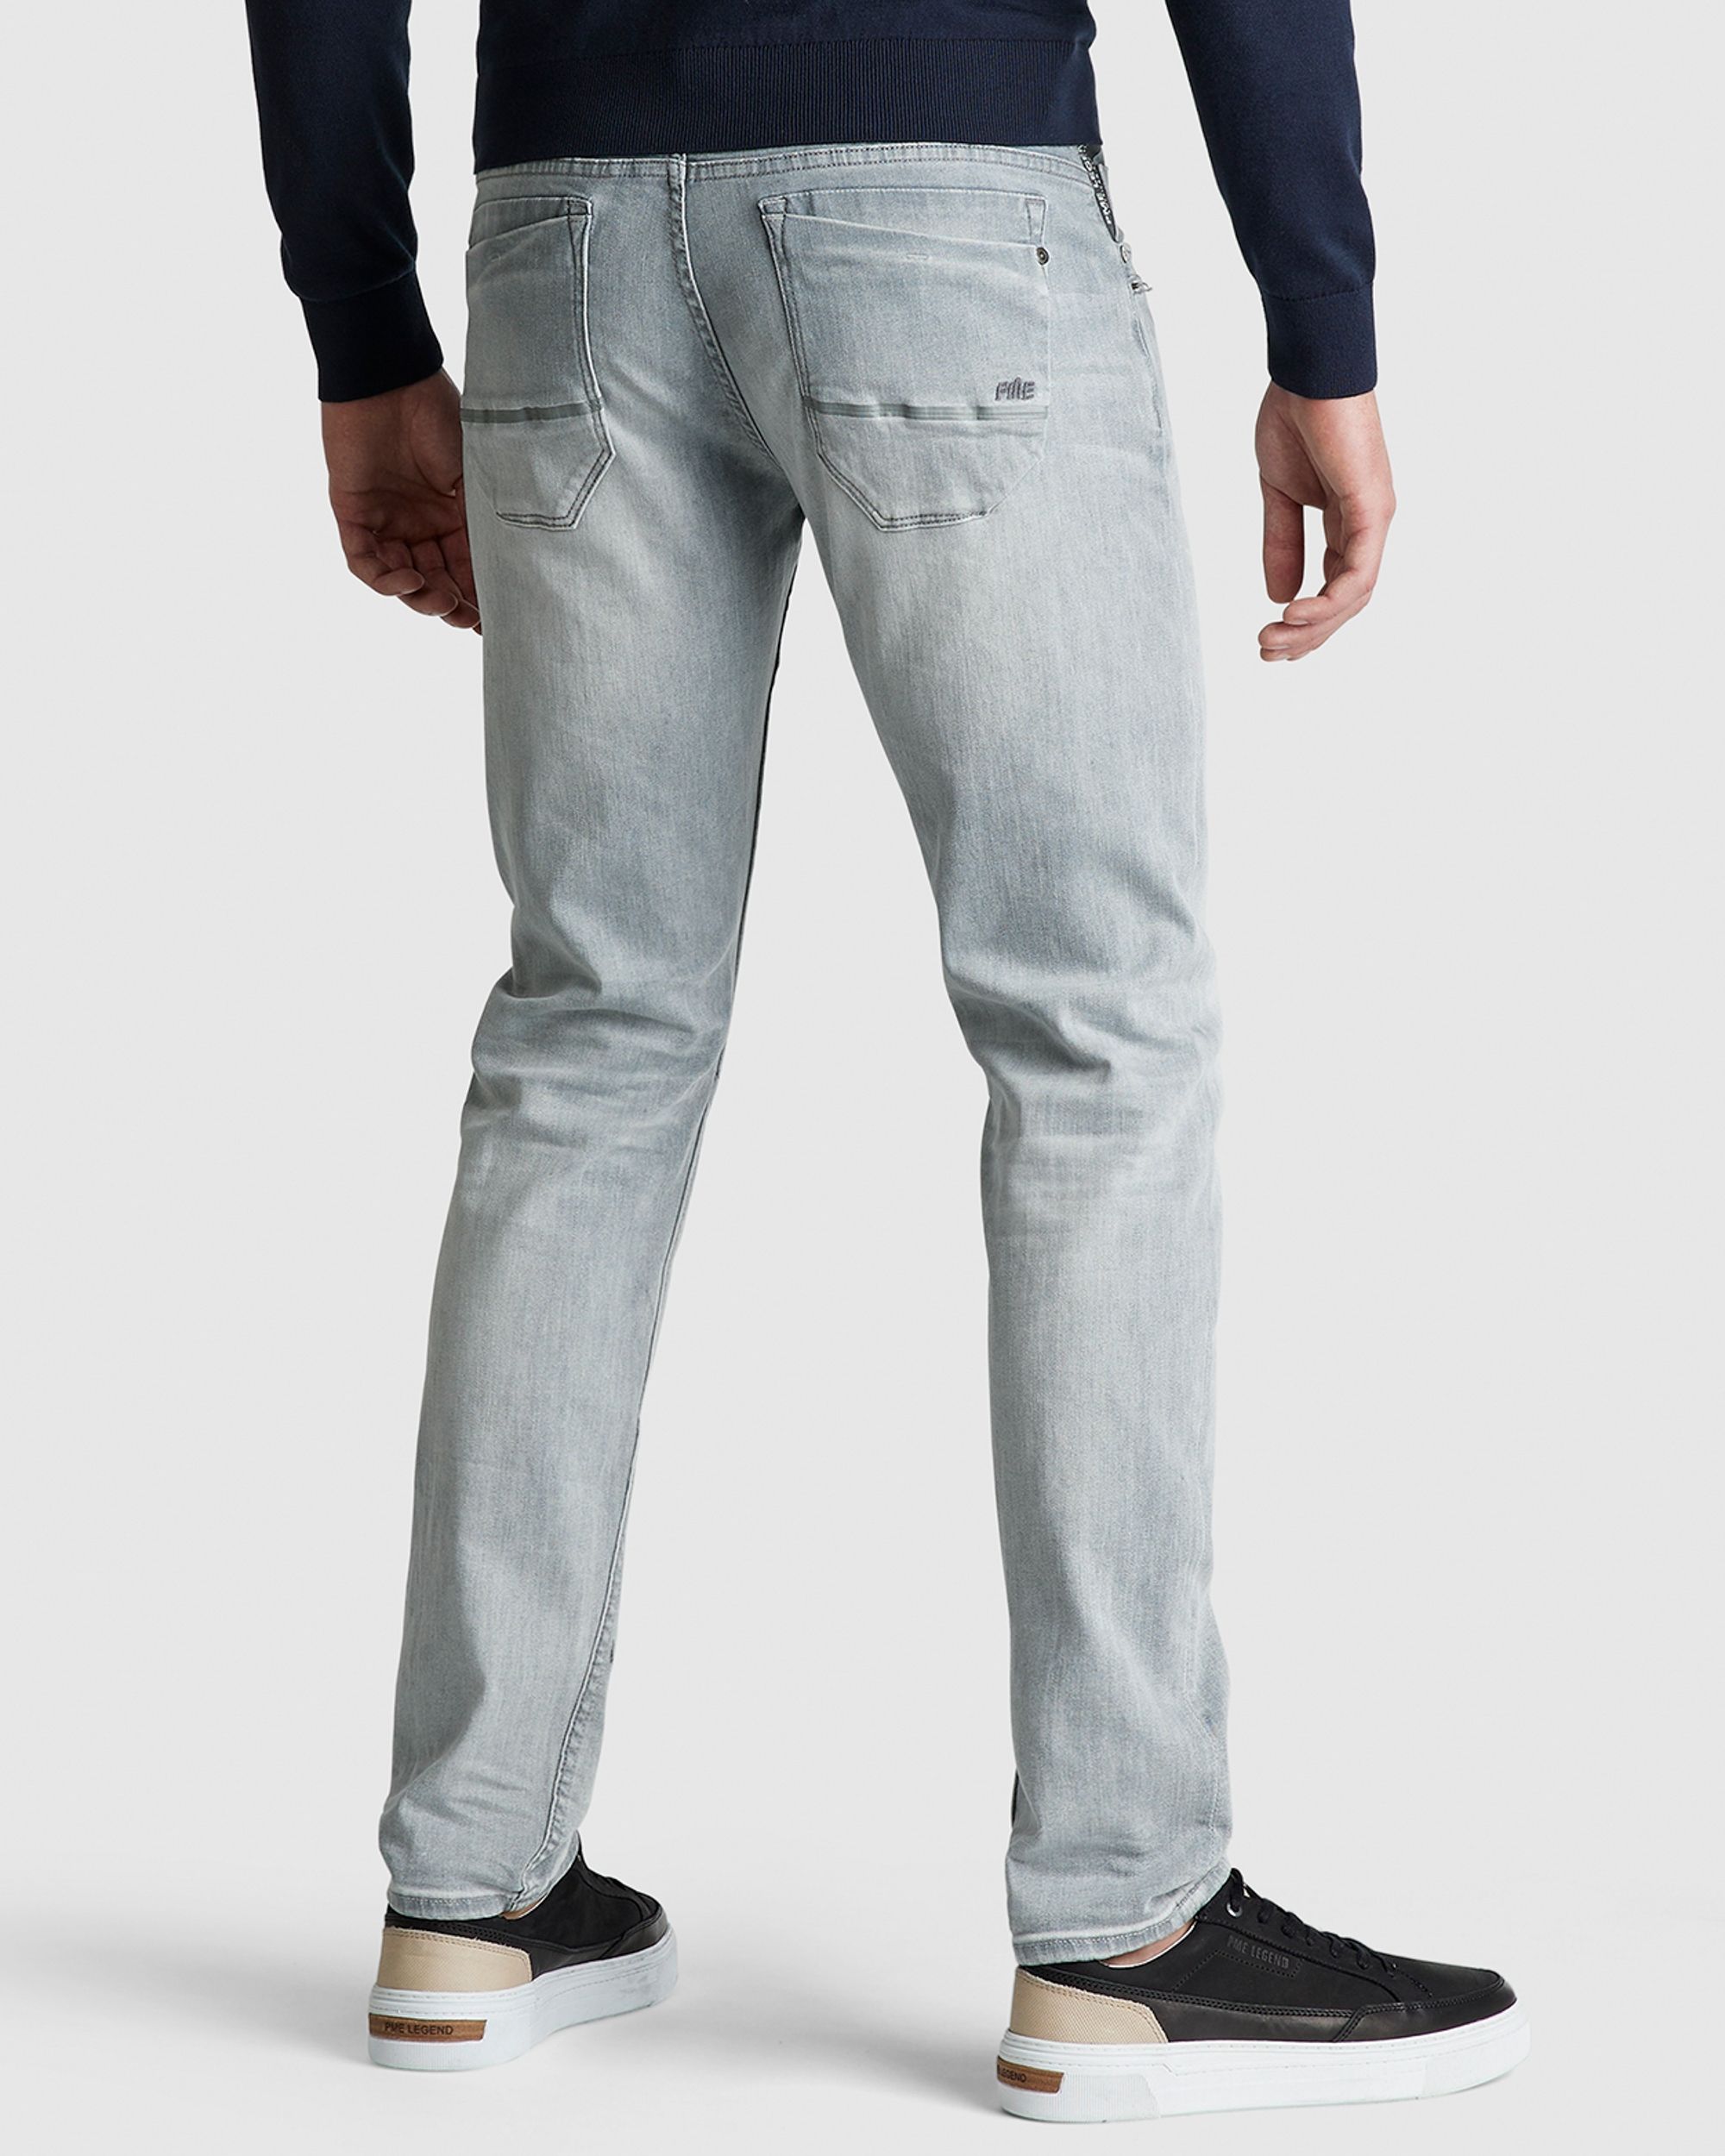 Opknappen Mew Mew Grote hoeveelheid PME Legend Skymaster Jeans | Shop nu - OFM.